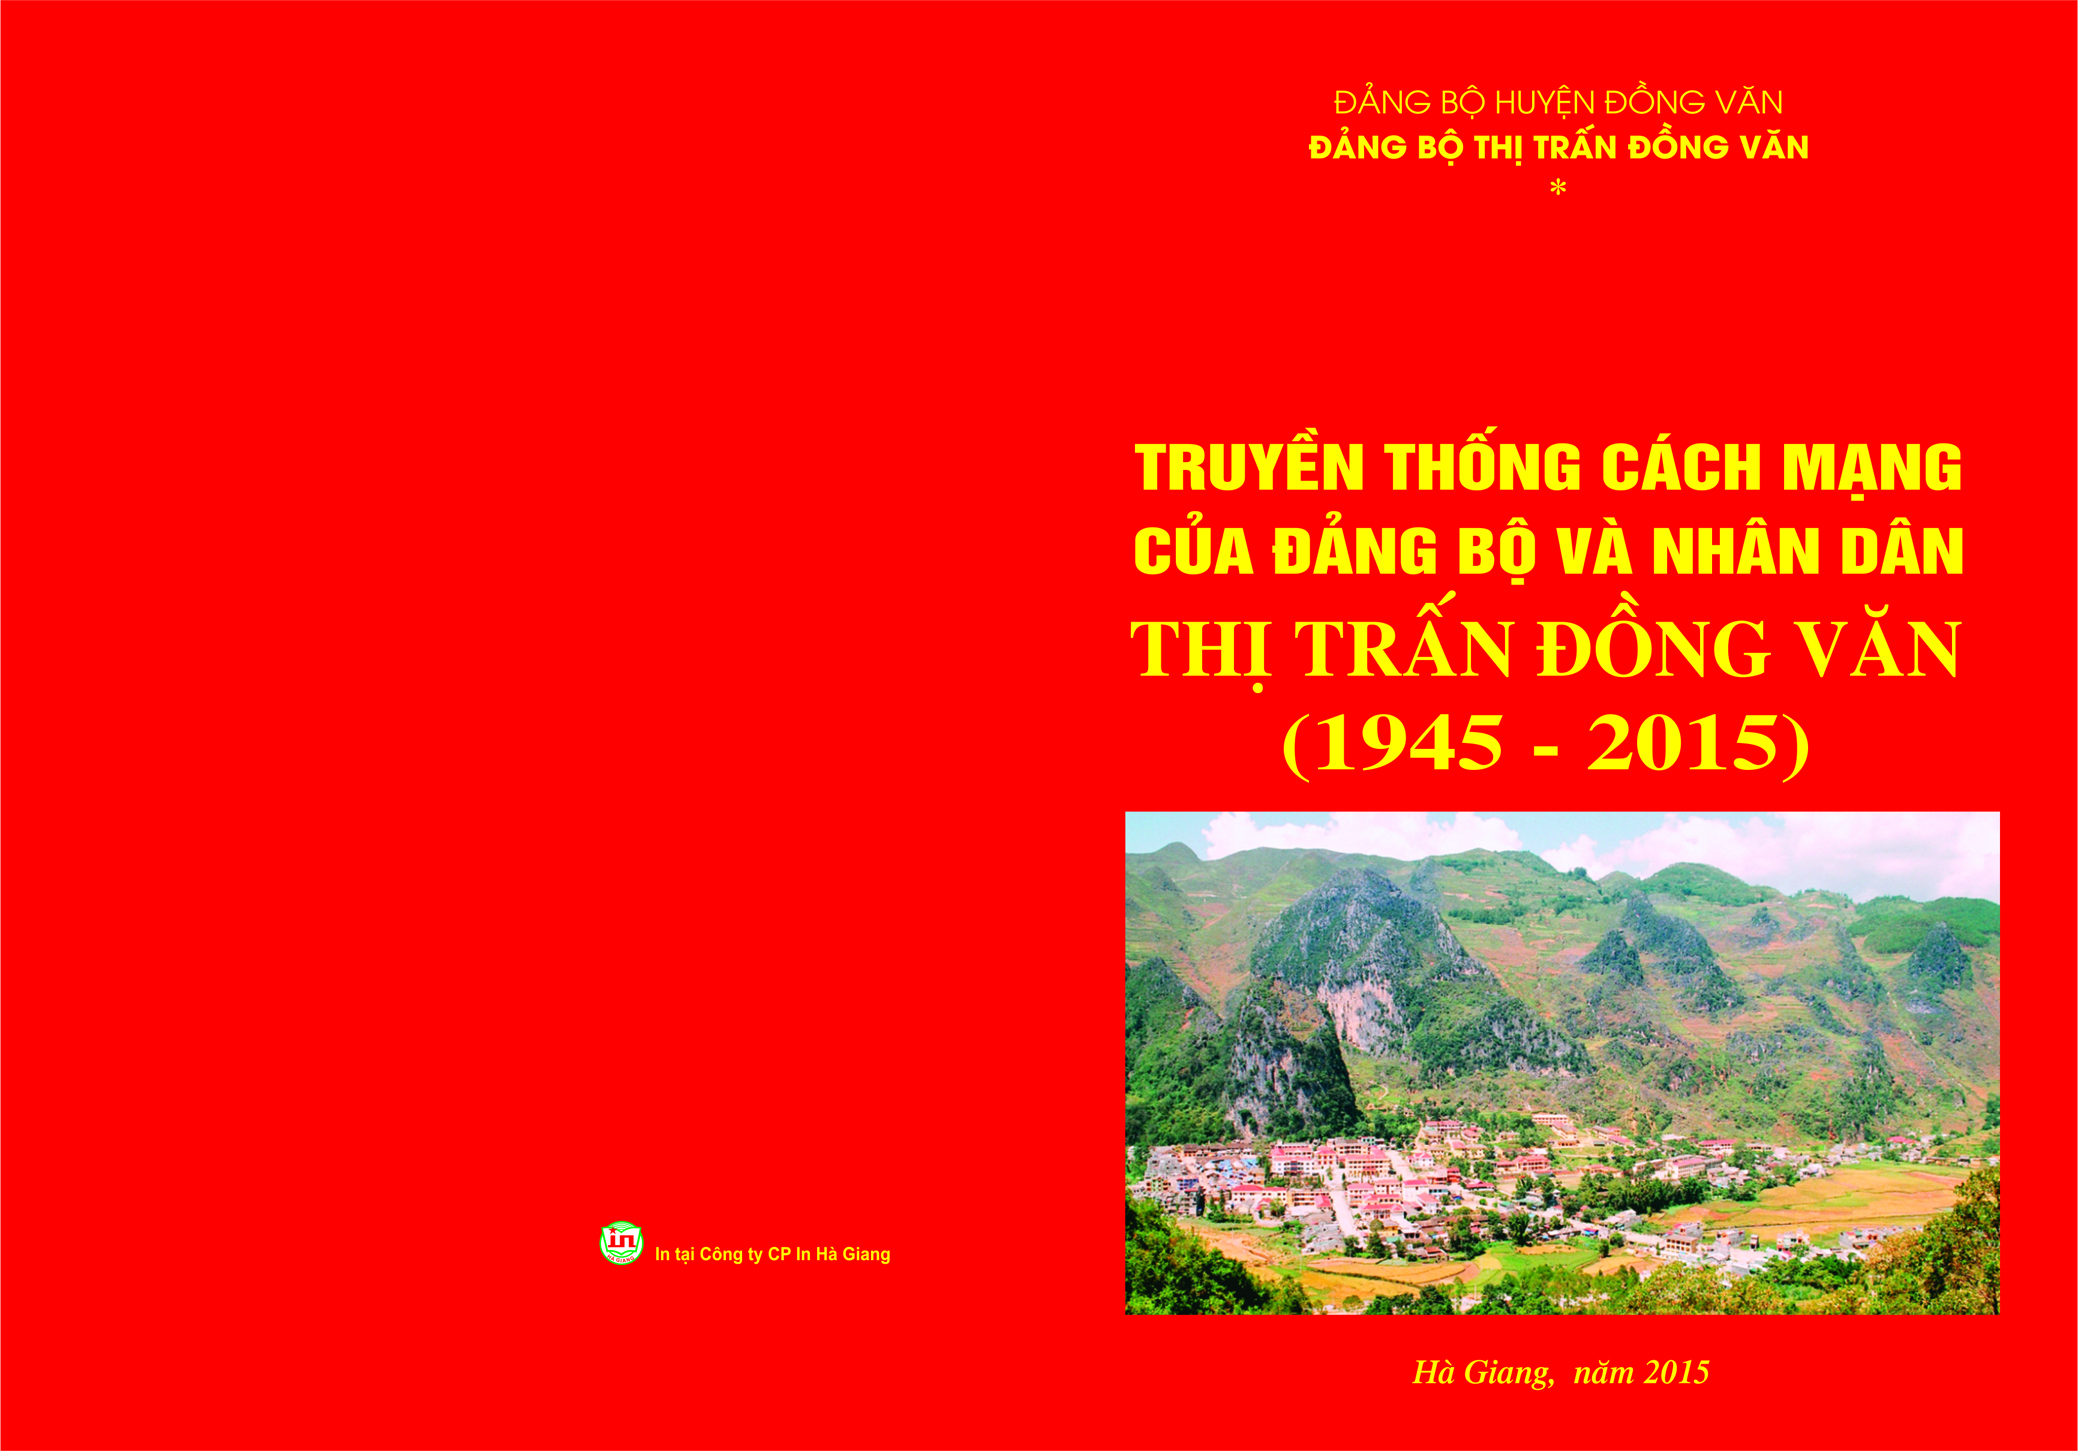 Truyền thống cách mạng của Đảng bộ và nhân dân thị trấn Đồng Văn (Tiếp phần 2)